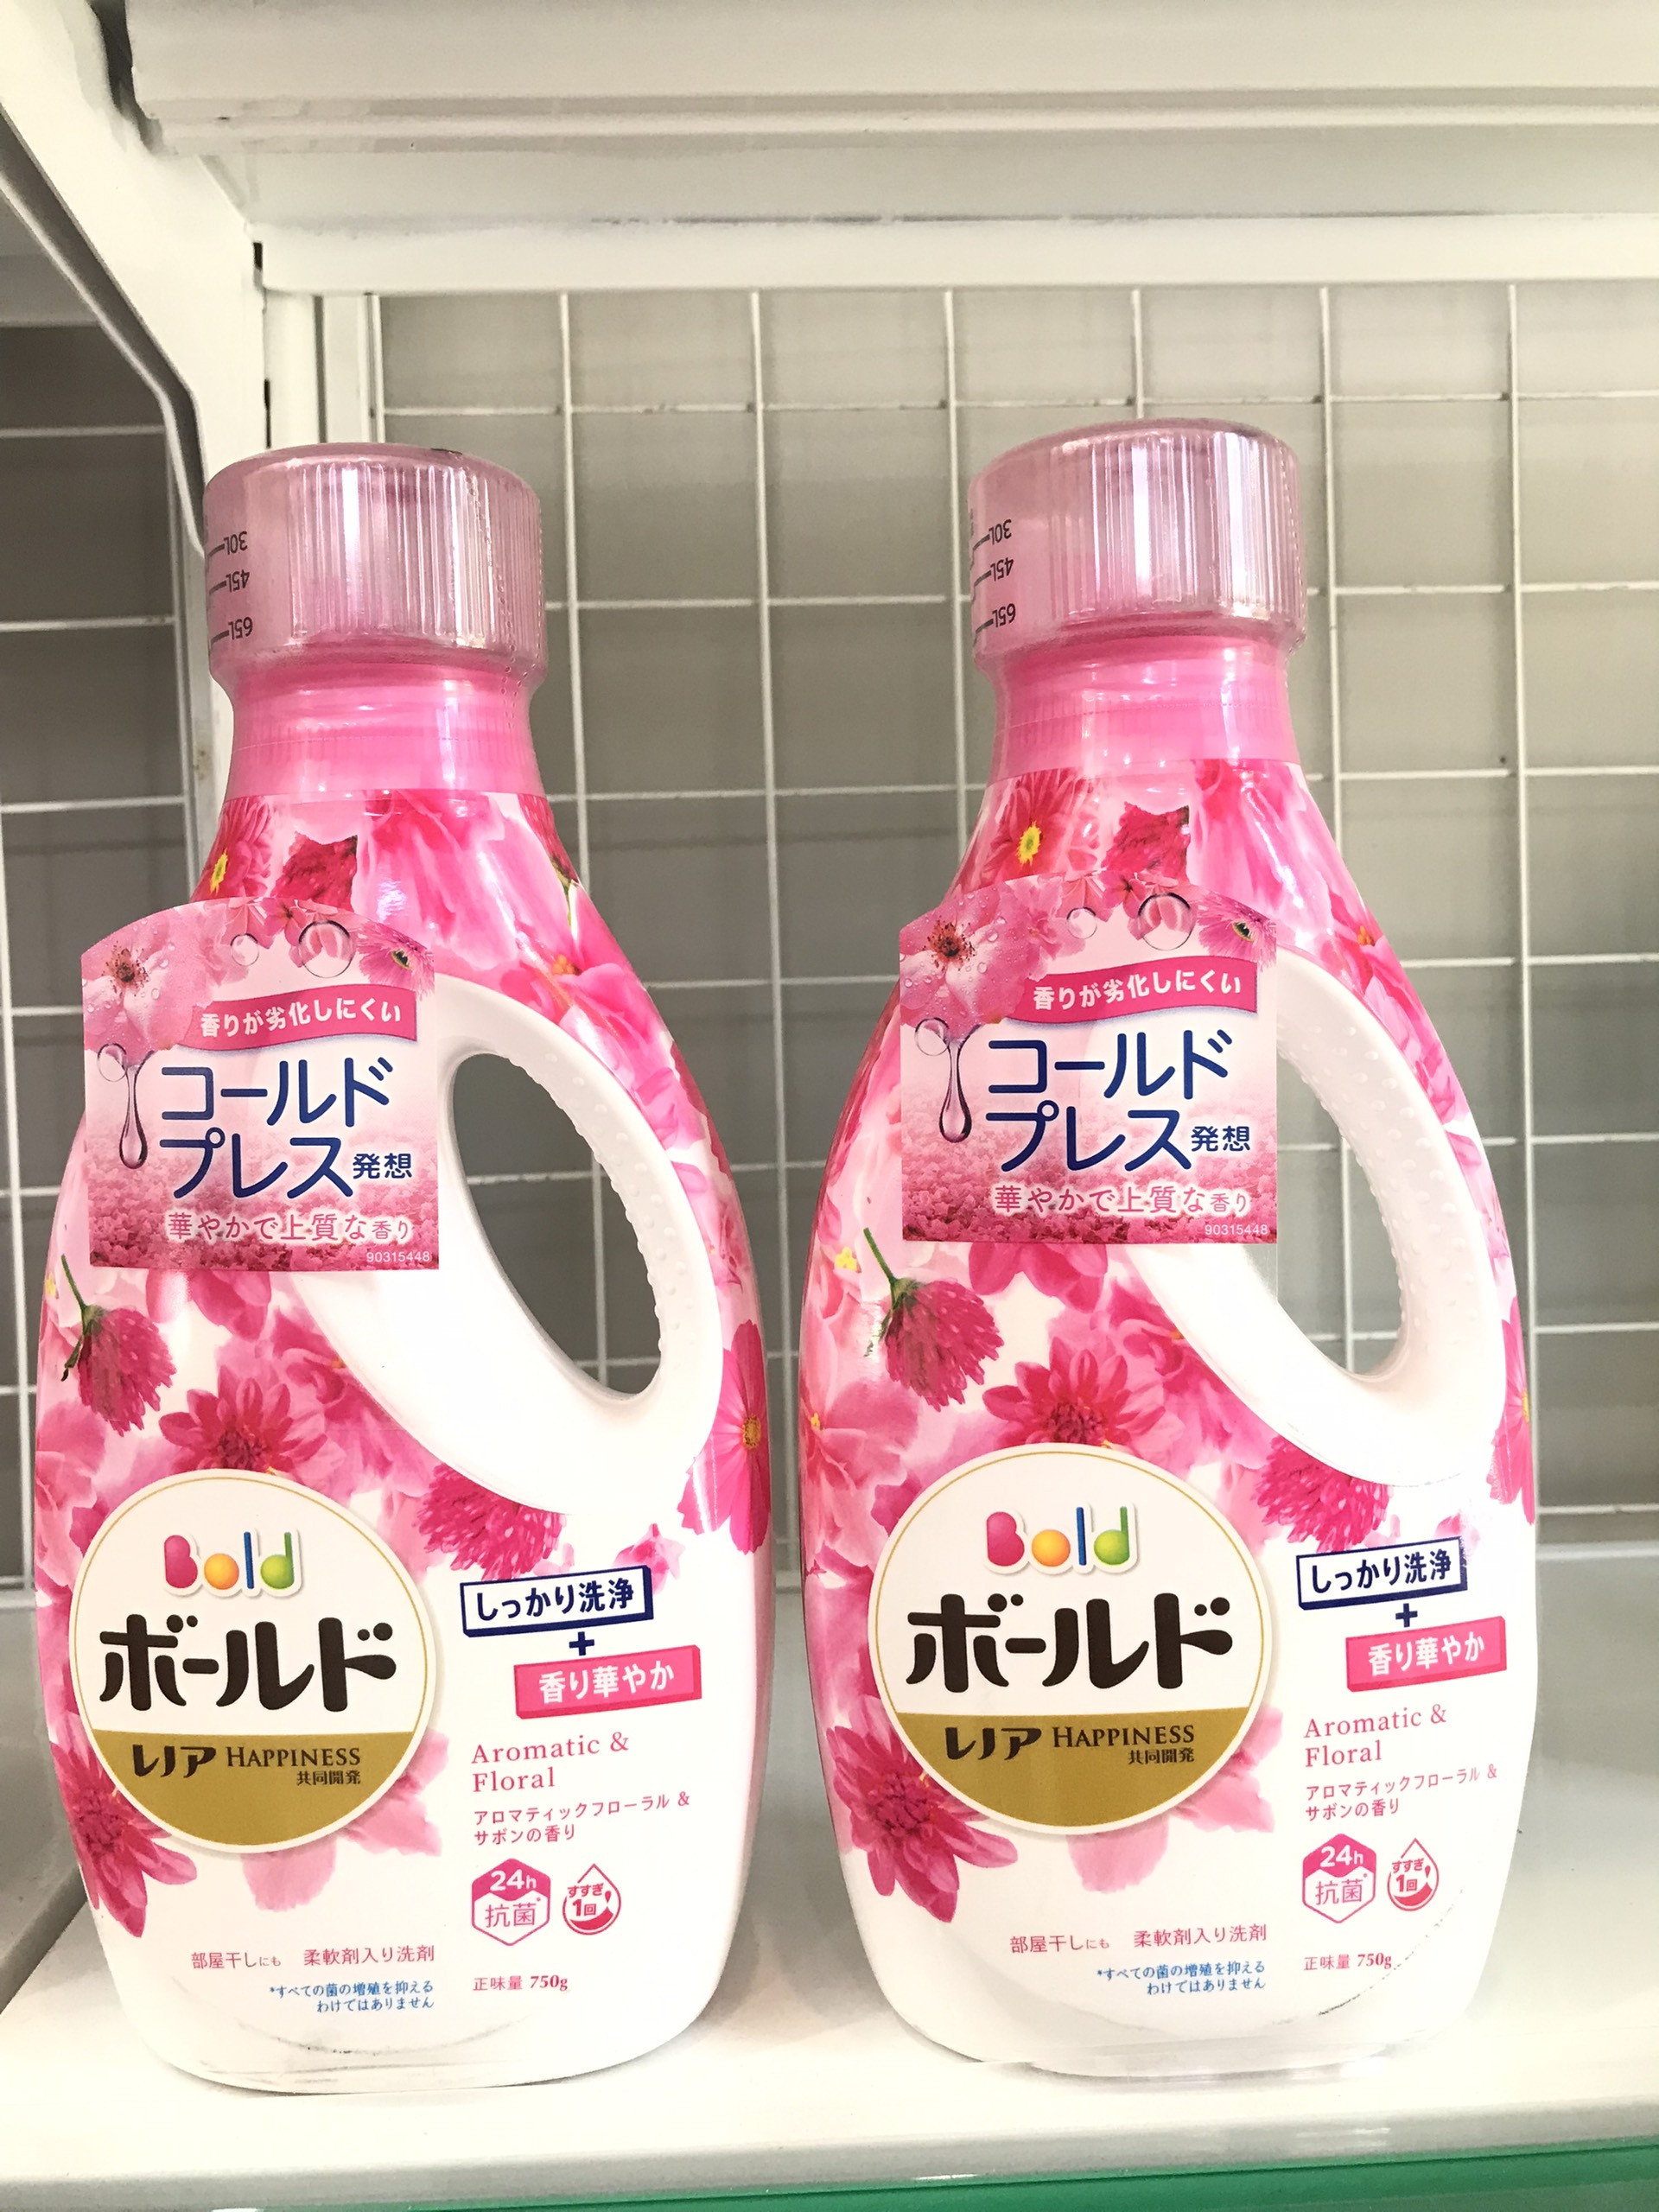 Nước giặt xả Bold P&G hương hoa hồng (màu hồng) – Nhật Bản 750g